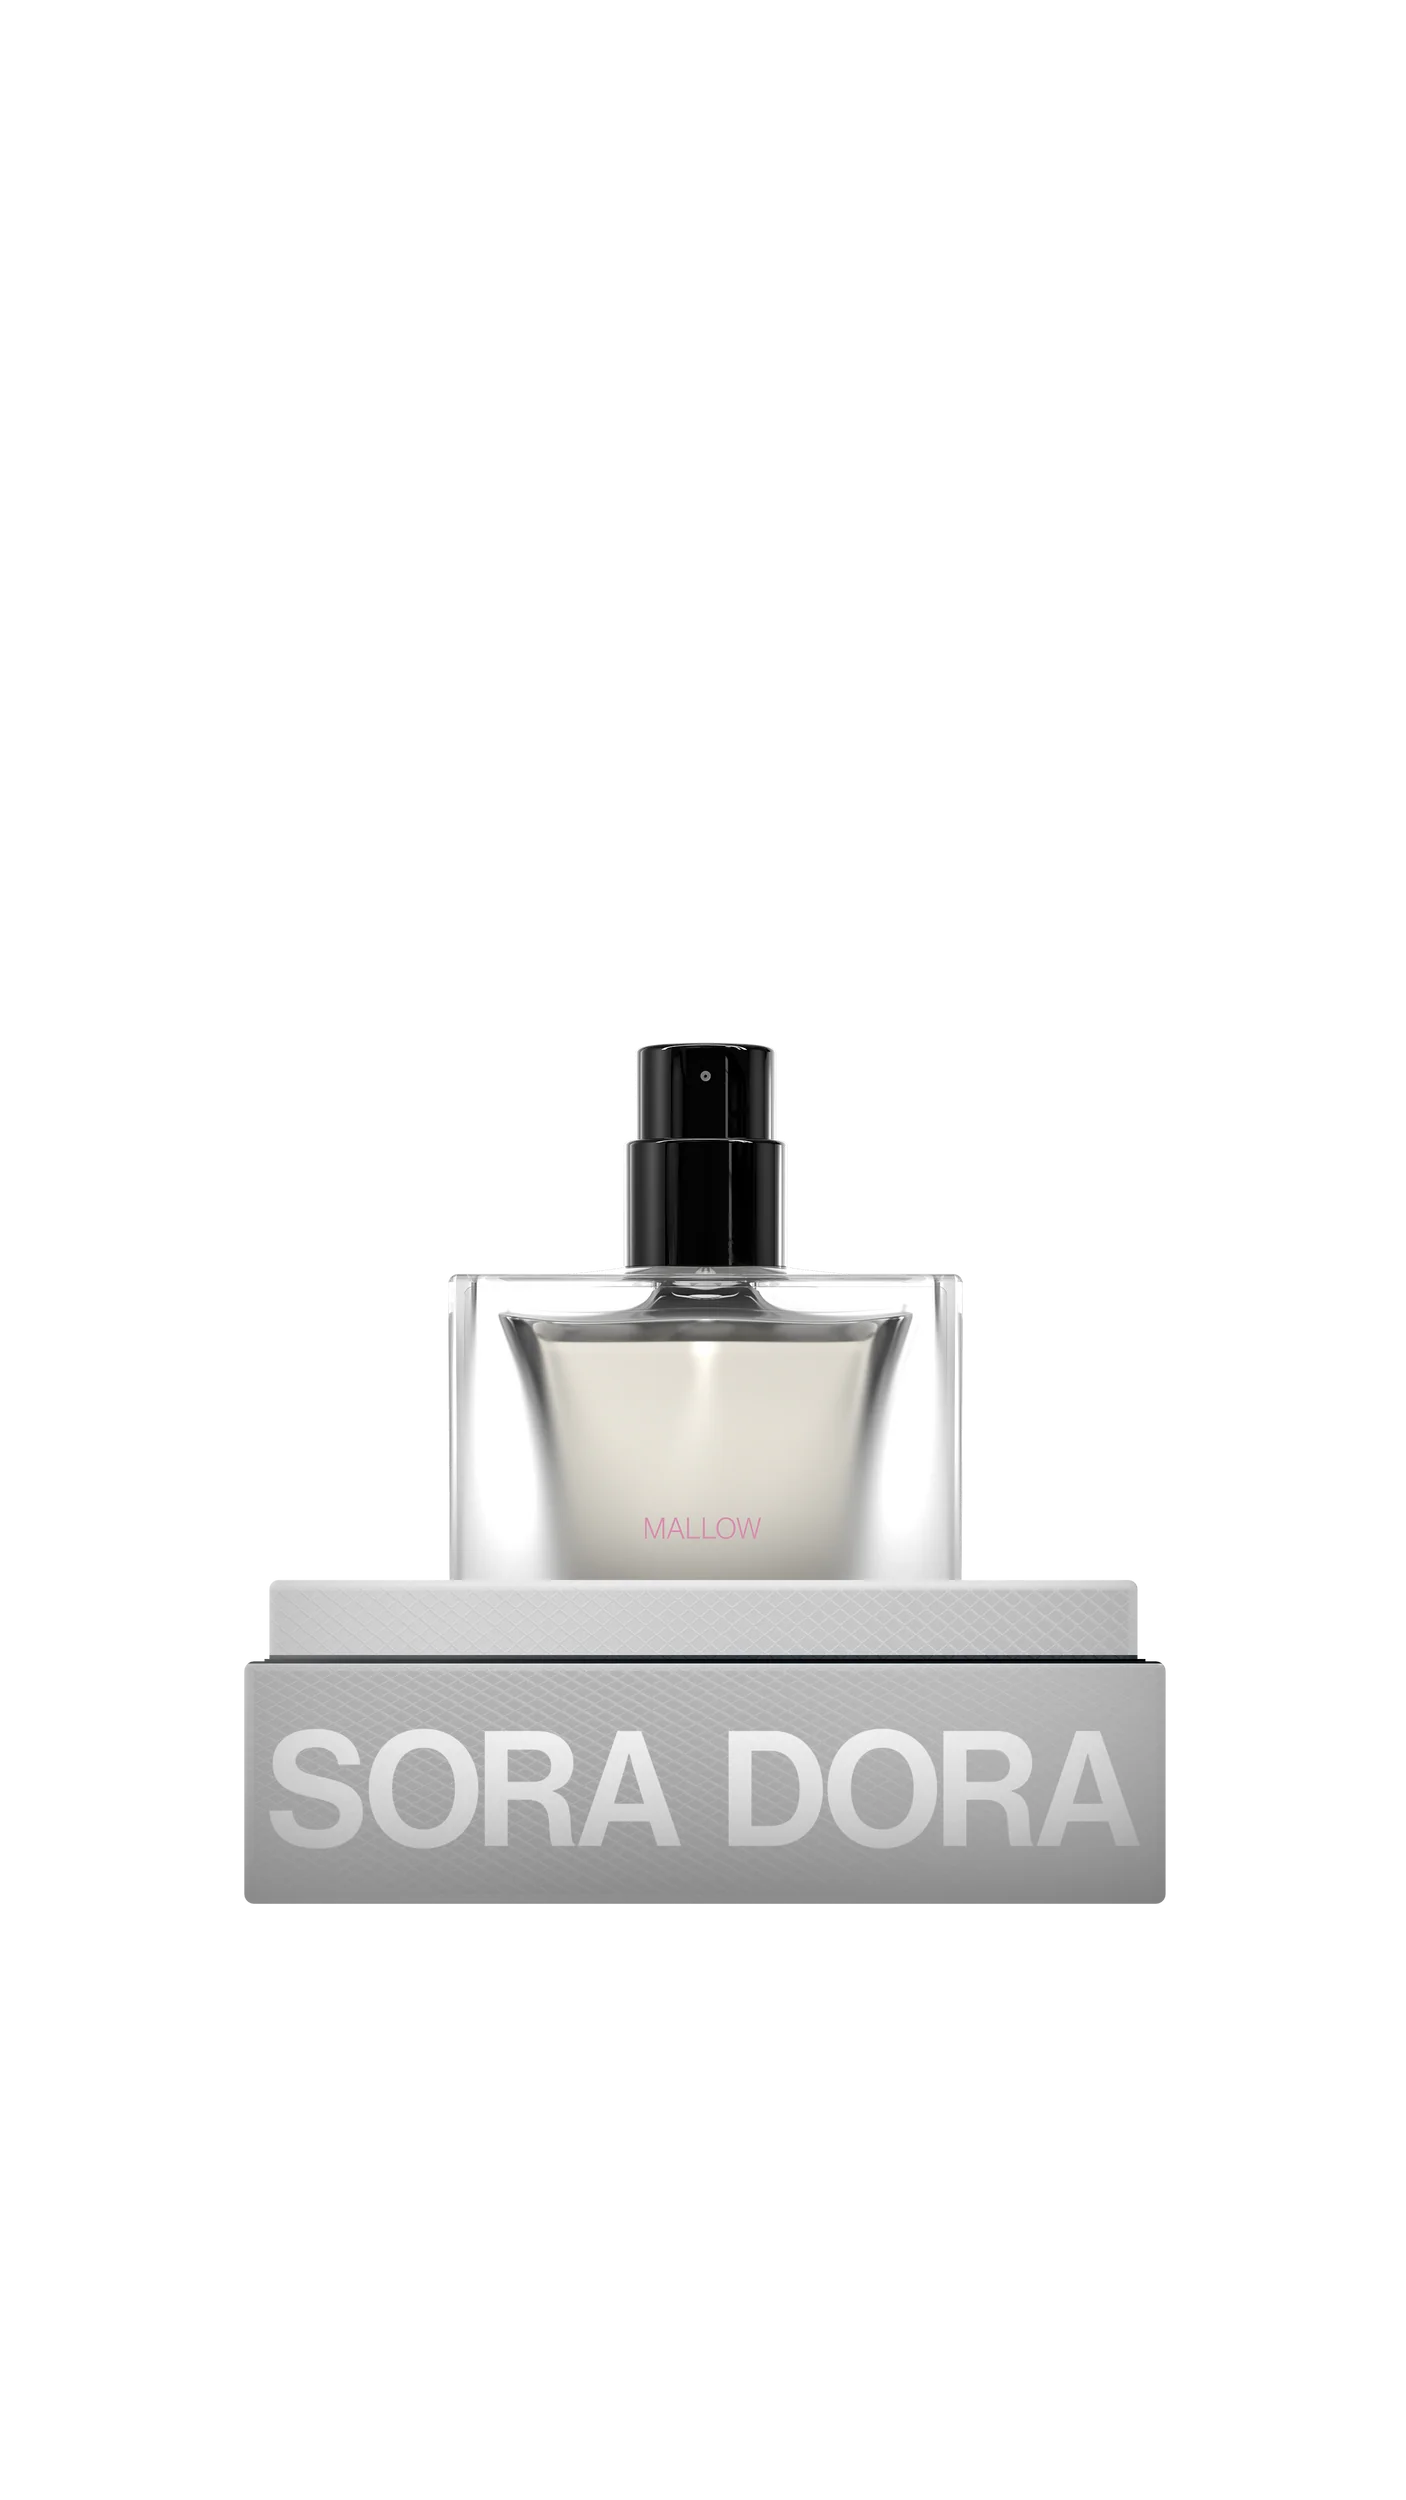 SORADORA Mallow 50ml / 1.7 fl oz Perfume Extract